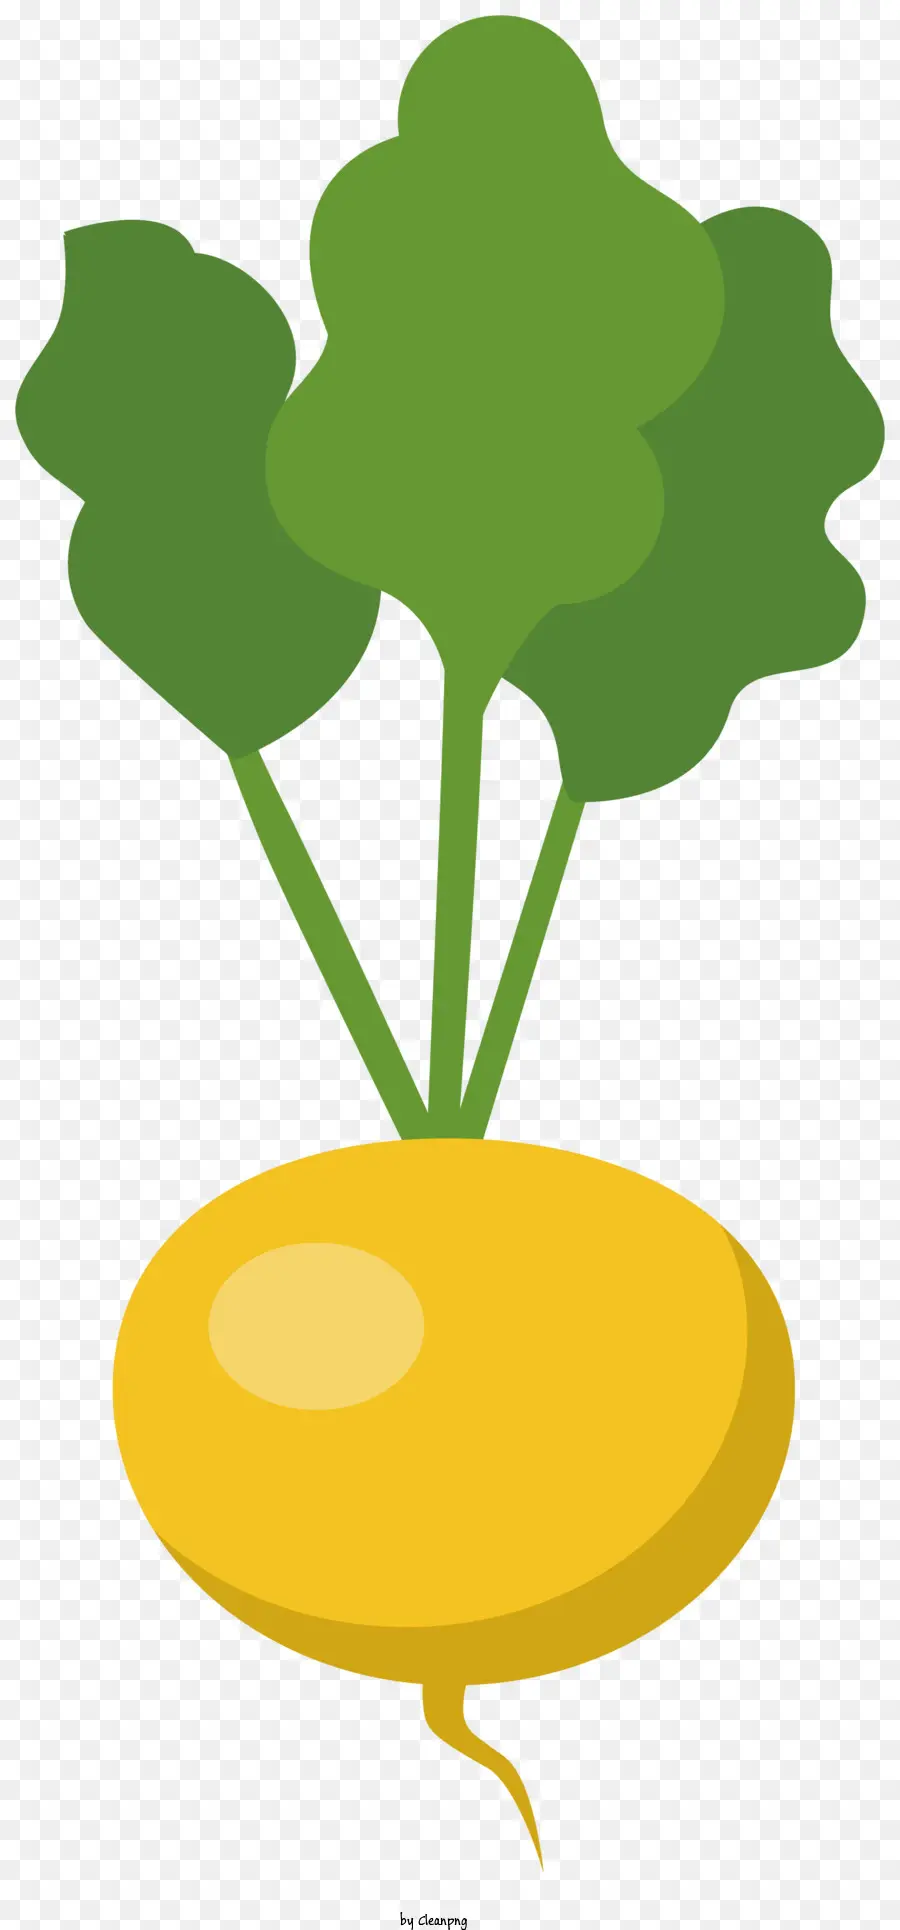 grünes Blatt - Goldene Radieschenpflanze mit einem grünen Blatt